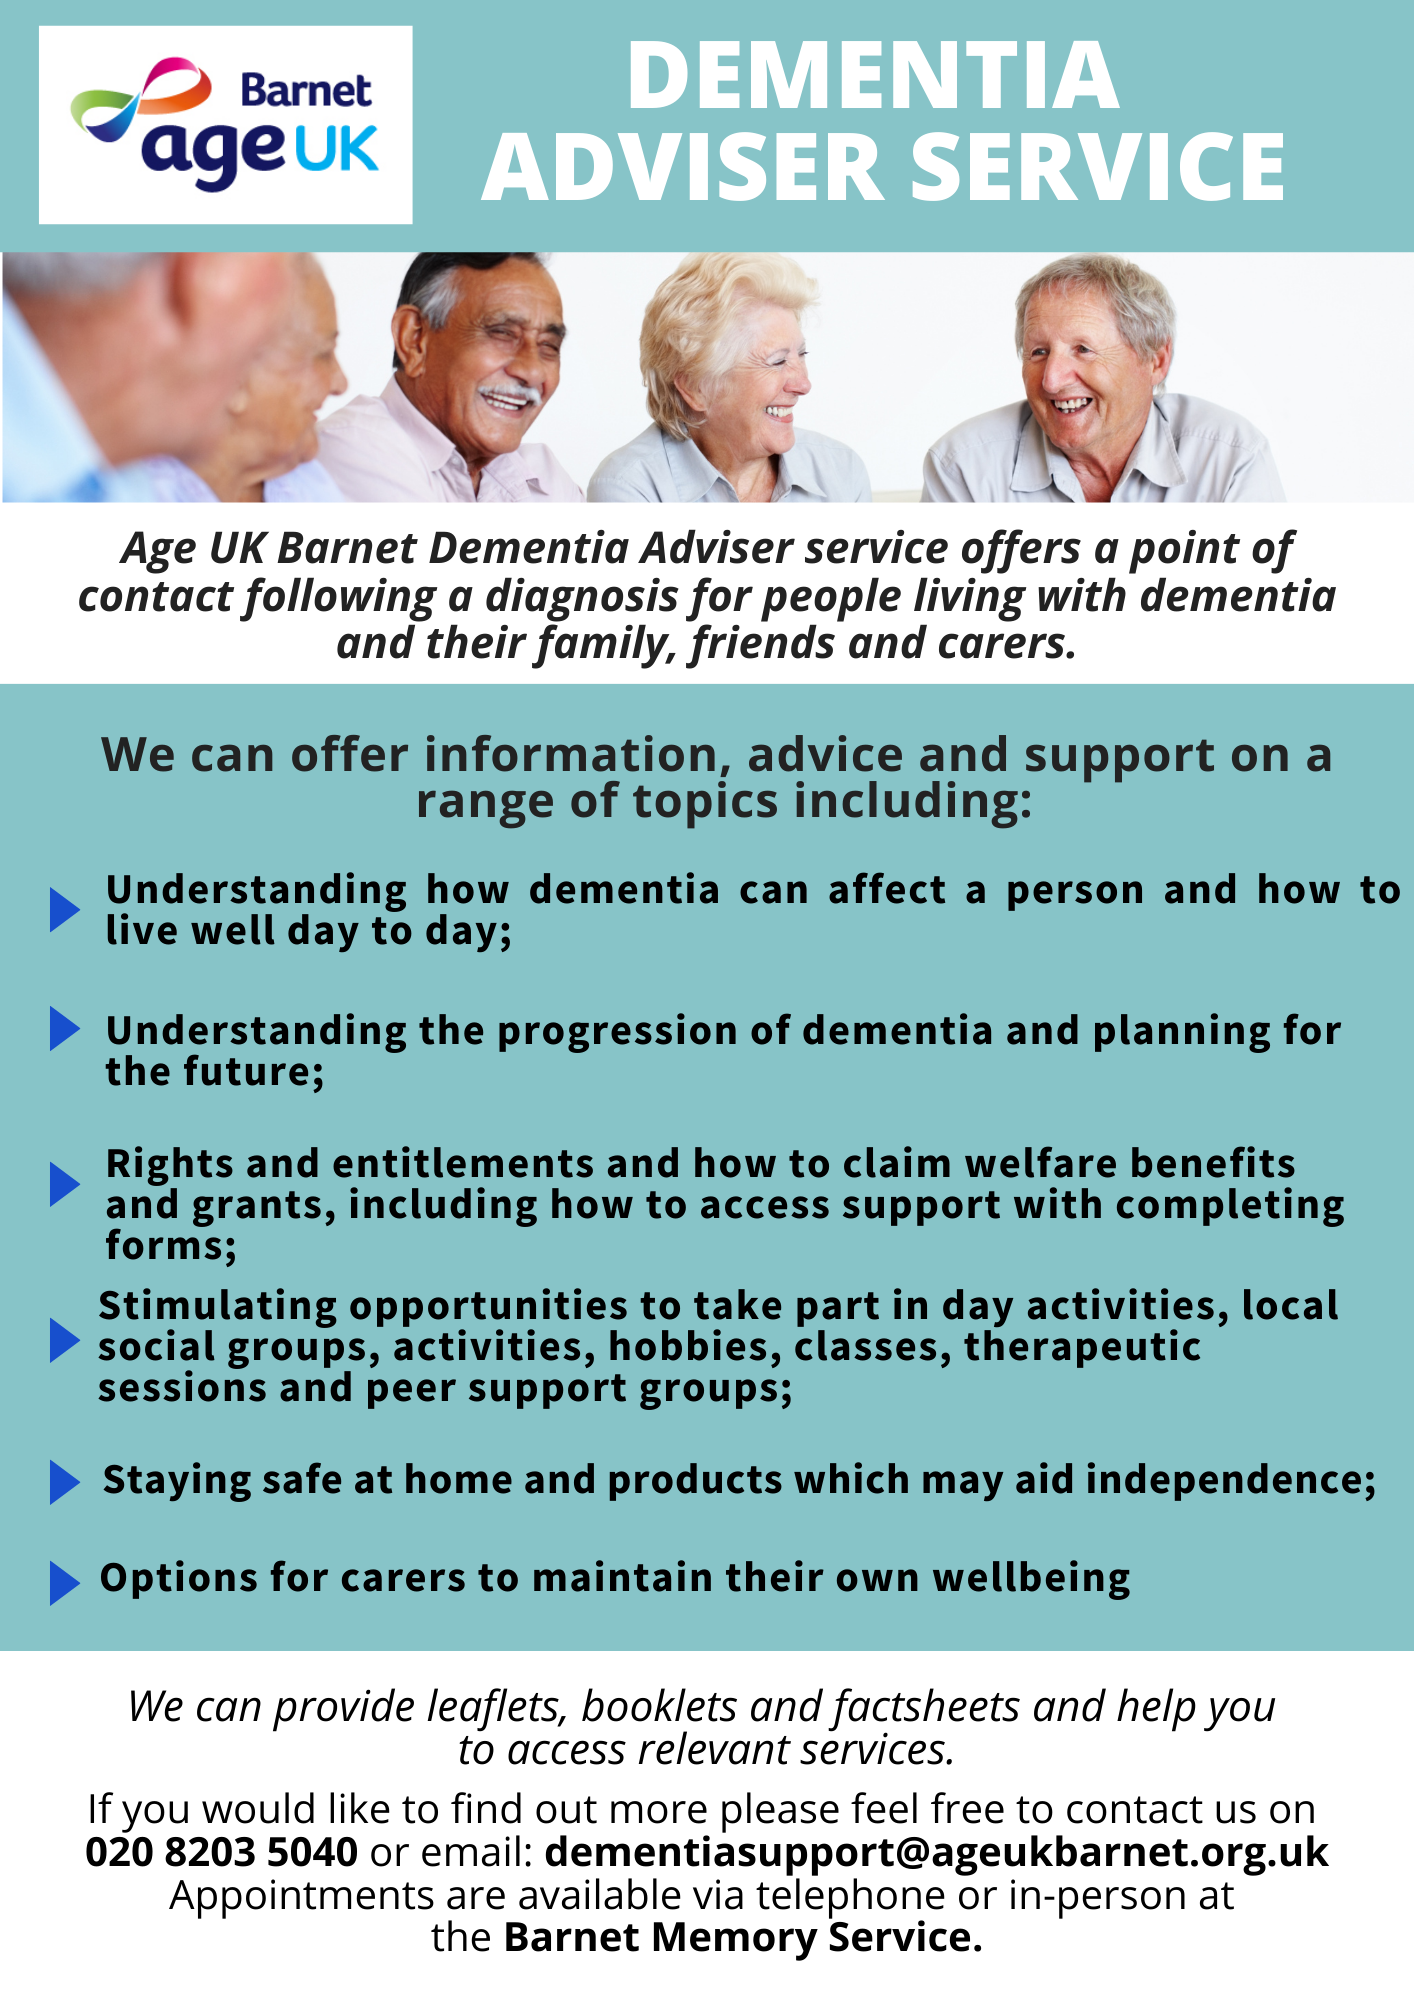 Dementia Advisor Service. See AgeUKBarnet.org.uk for more information